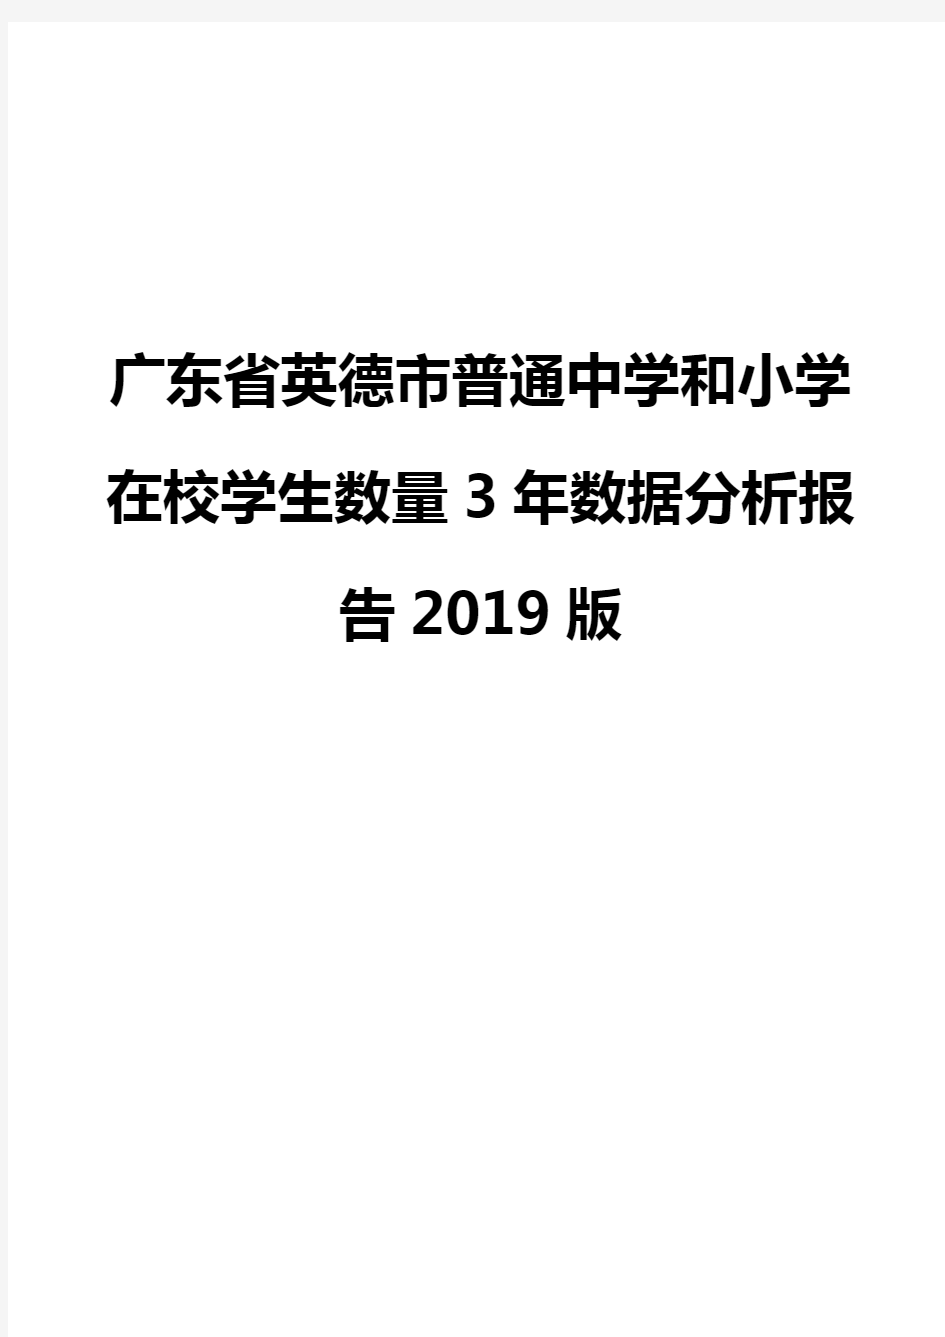 广东省英德市普通中学和小学在校学生数量3年数据分析报告2019版